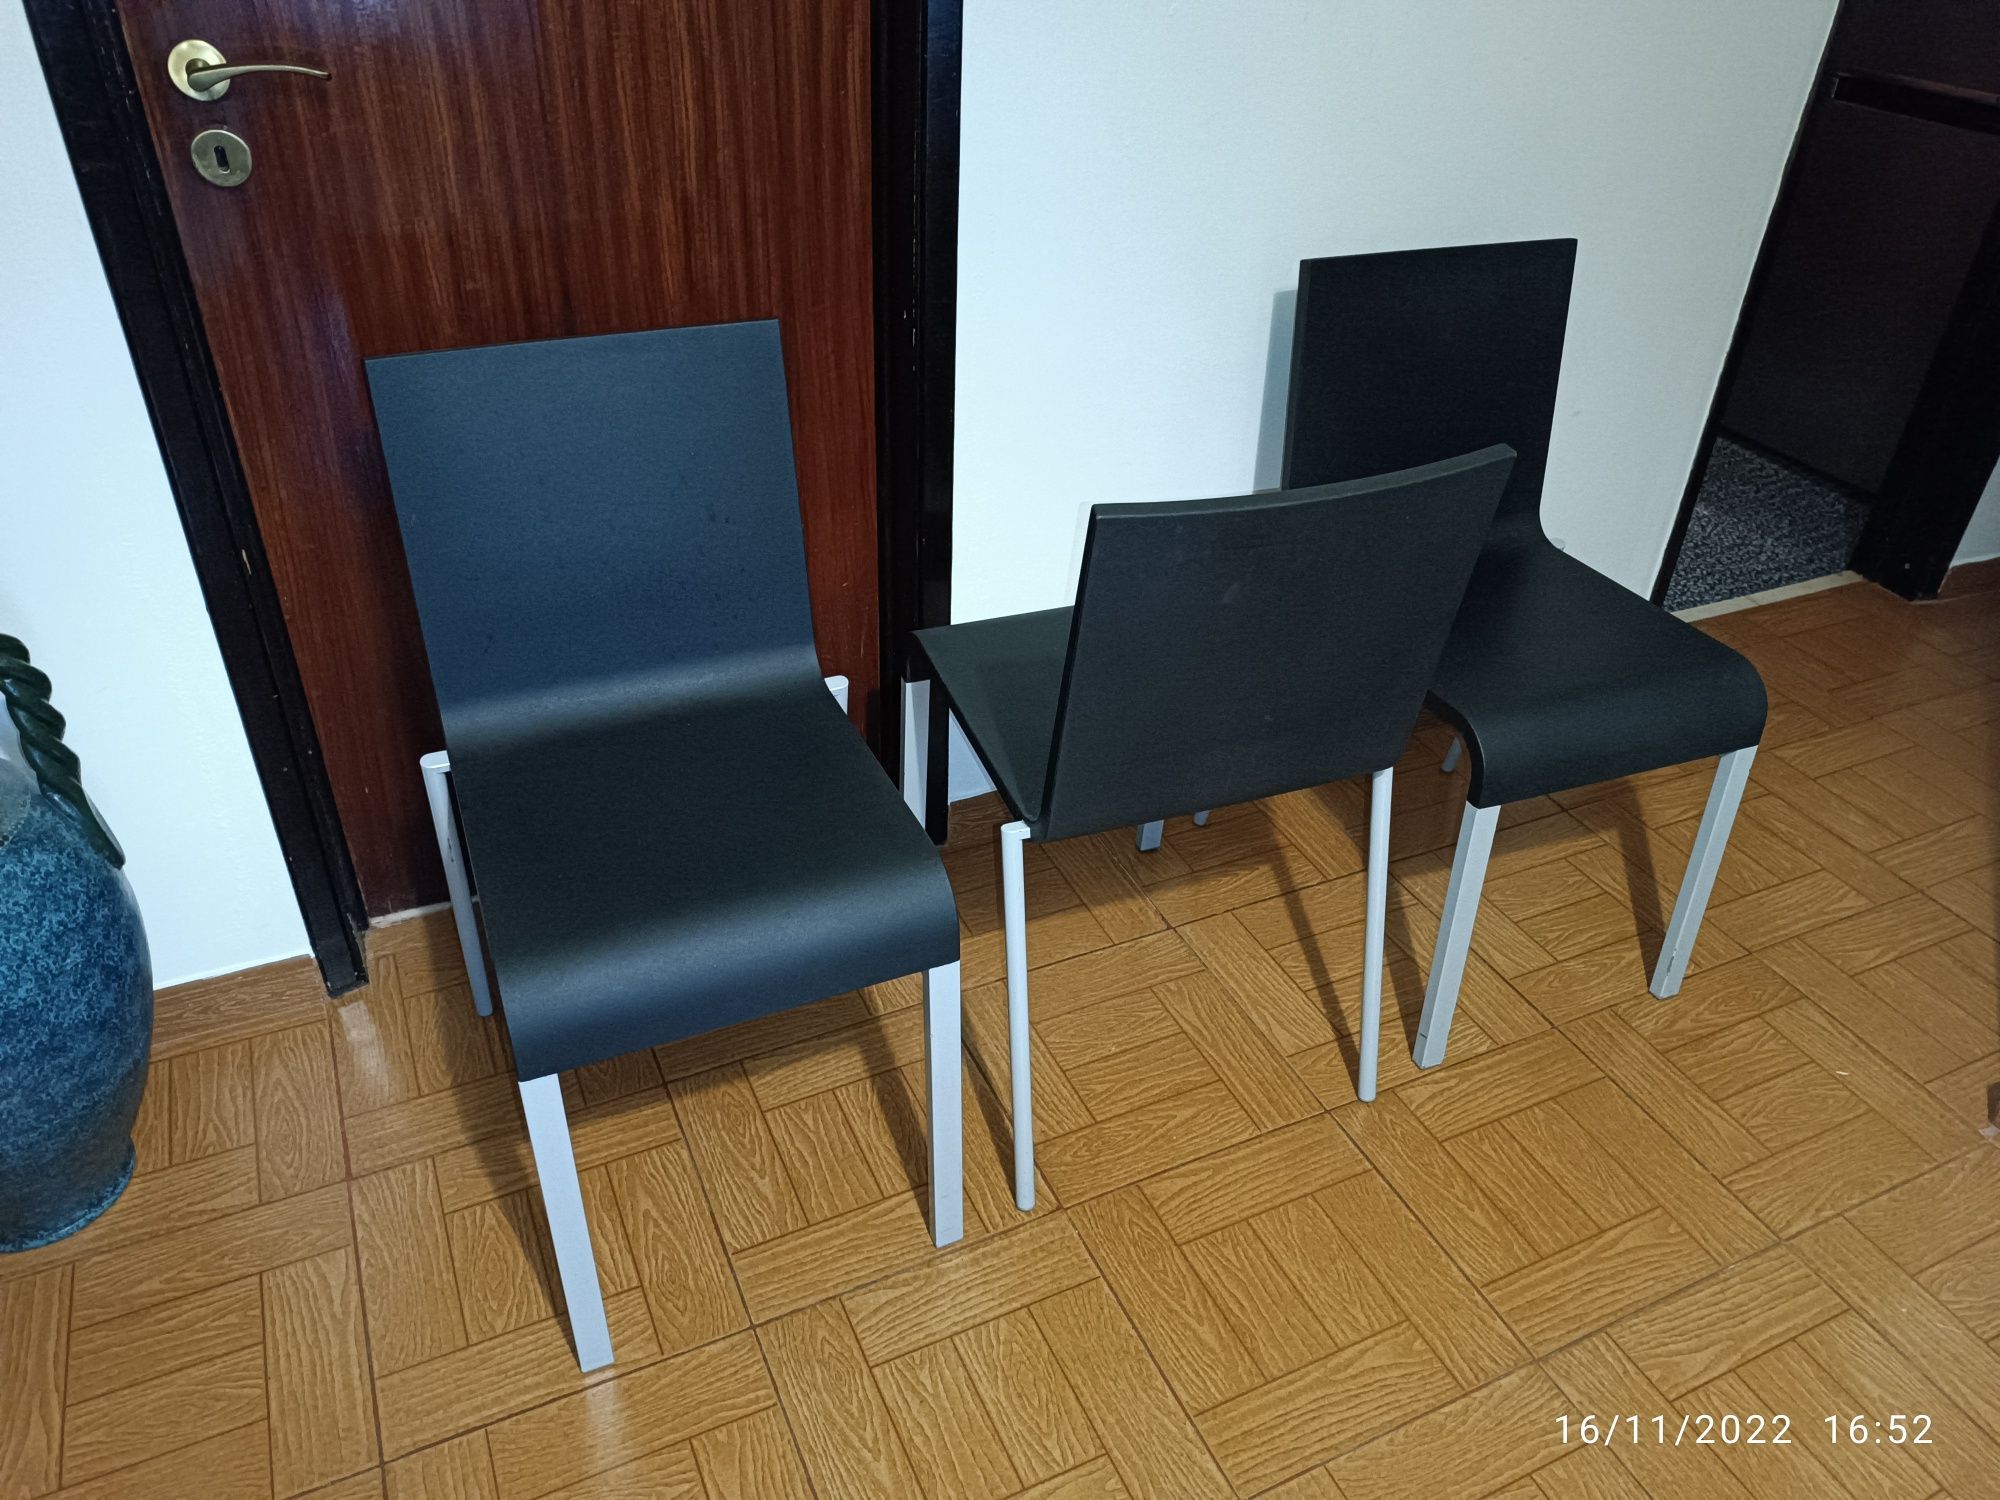 3 Cadeiras Vitra .03 Design Maarten Van Severen